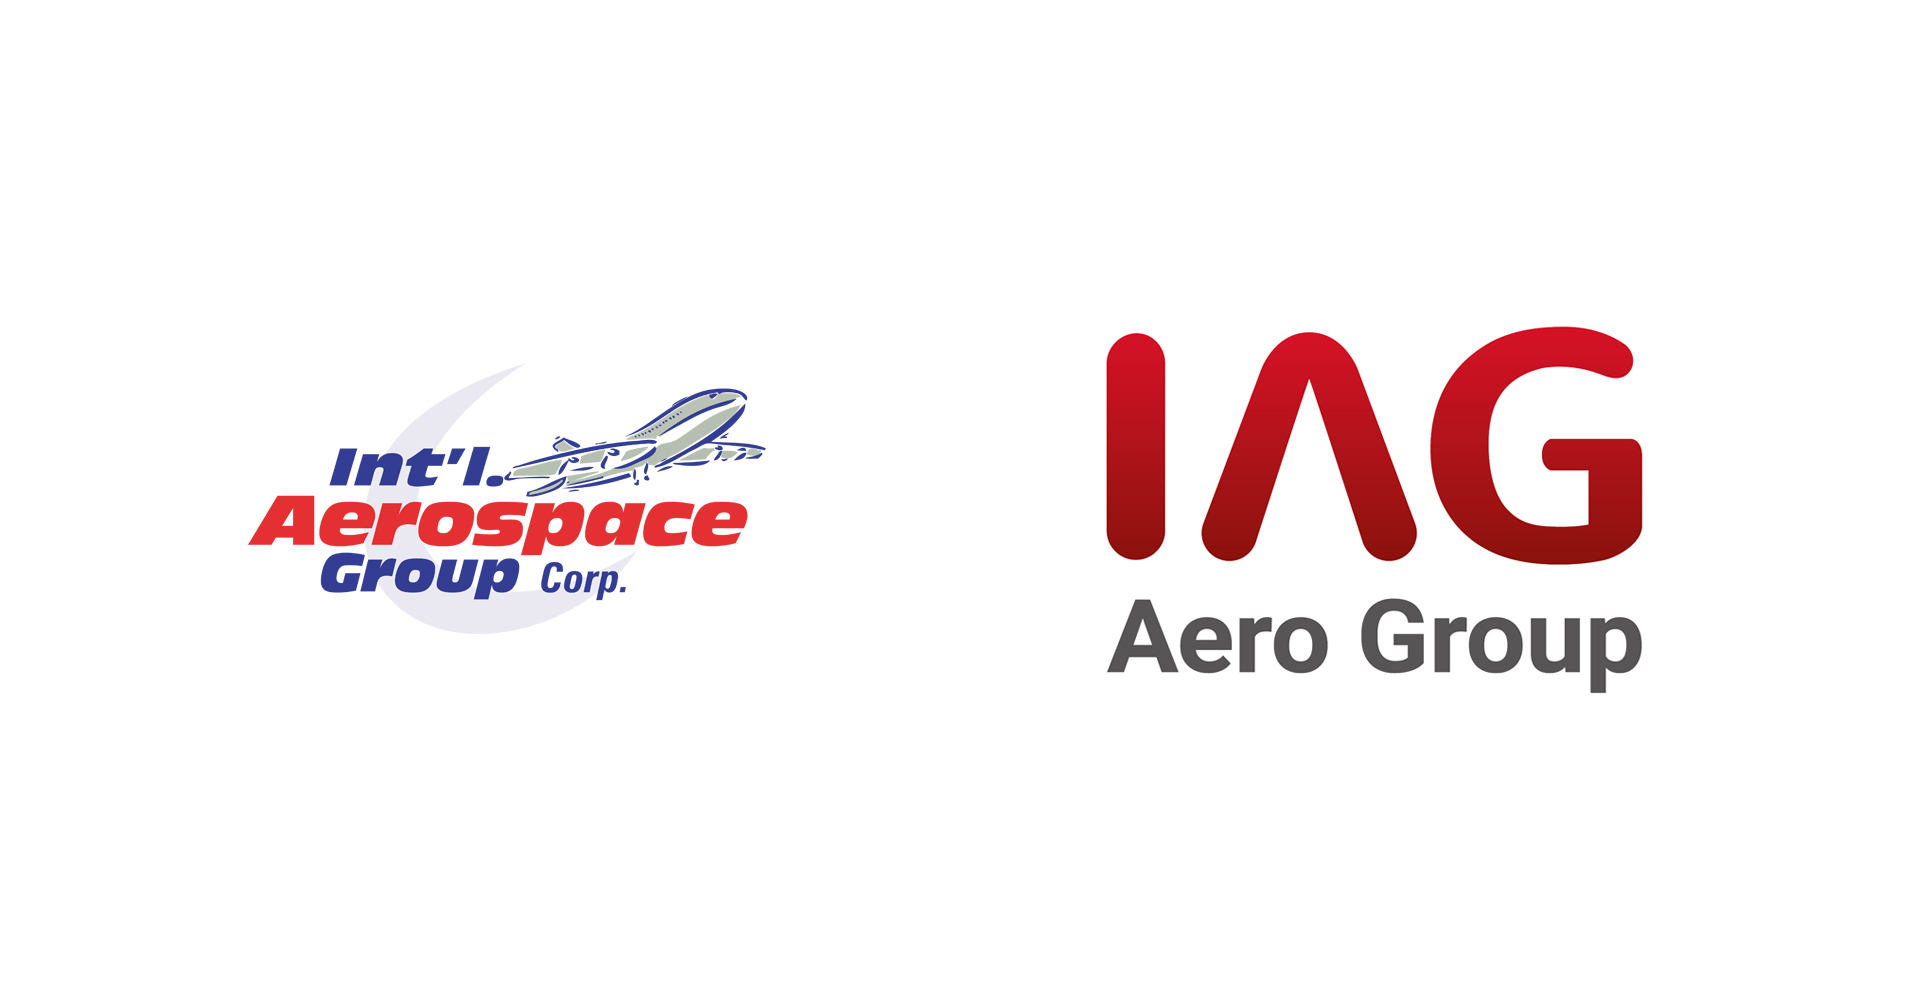 IAG Aero Group rebrands logo and company identity